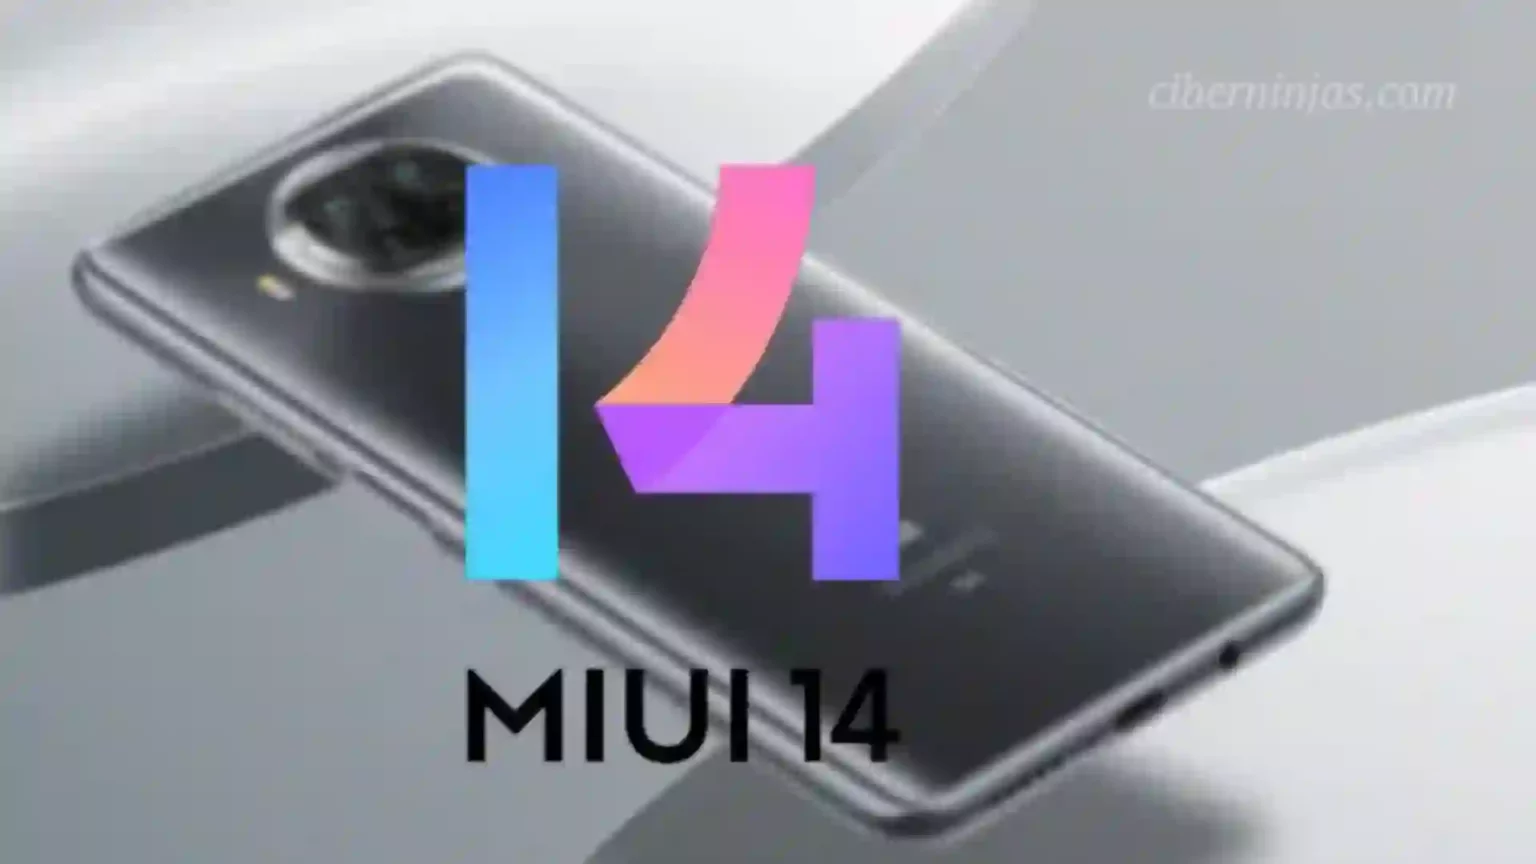 Smartphone Xiaomi Mi 10T recibirá la update a MIUI 14 basada en Android 12